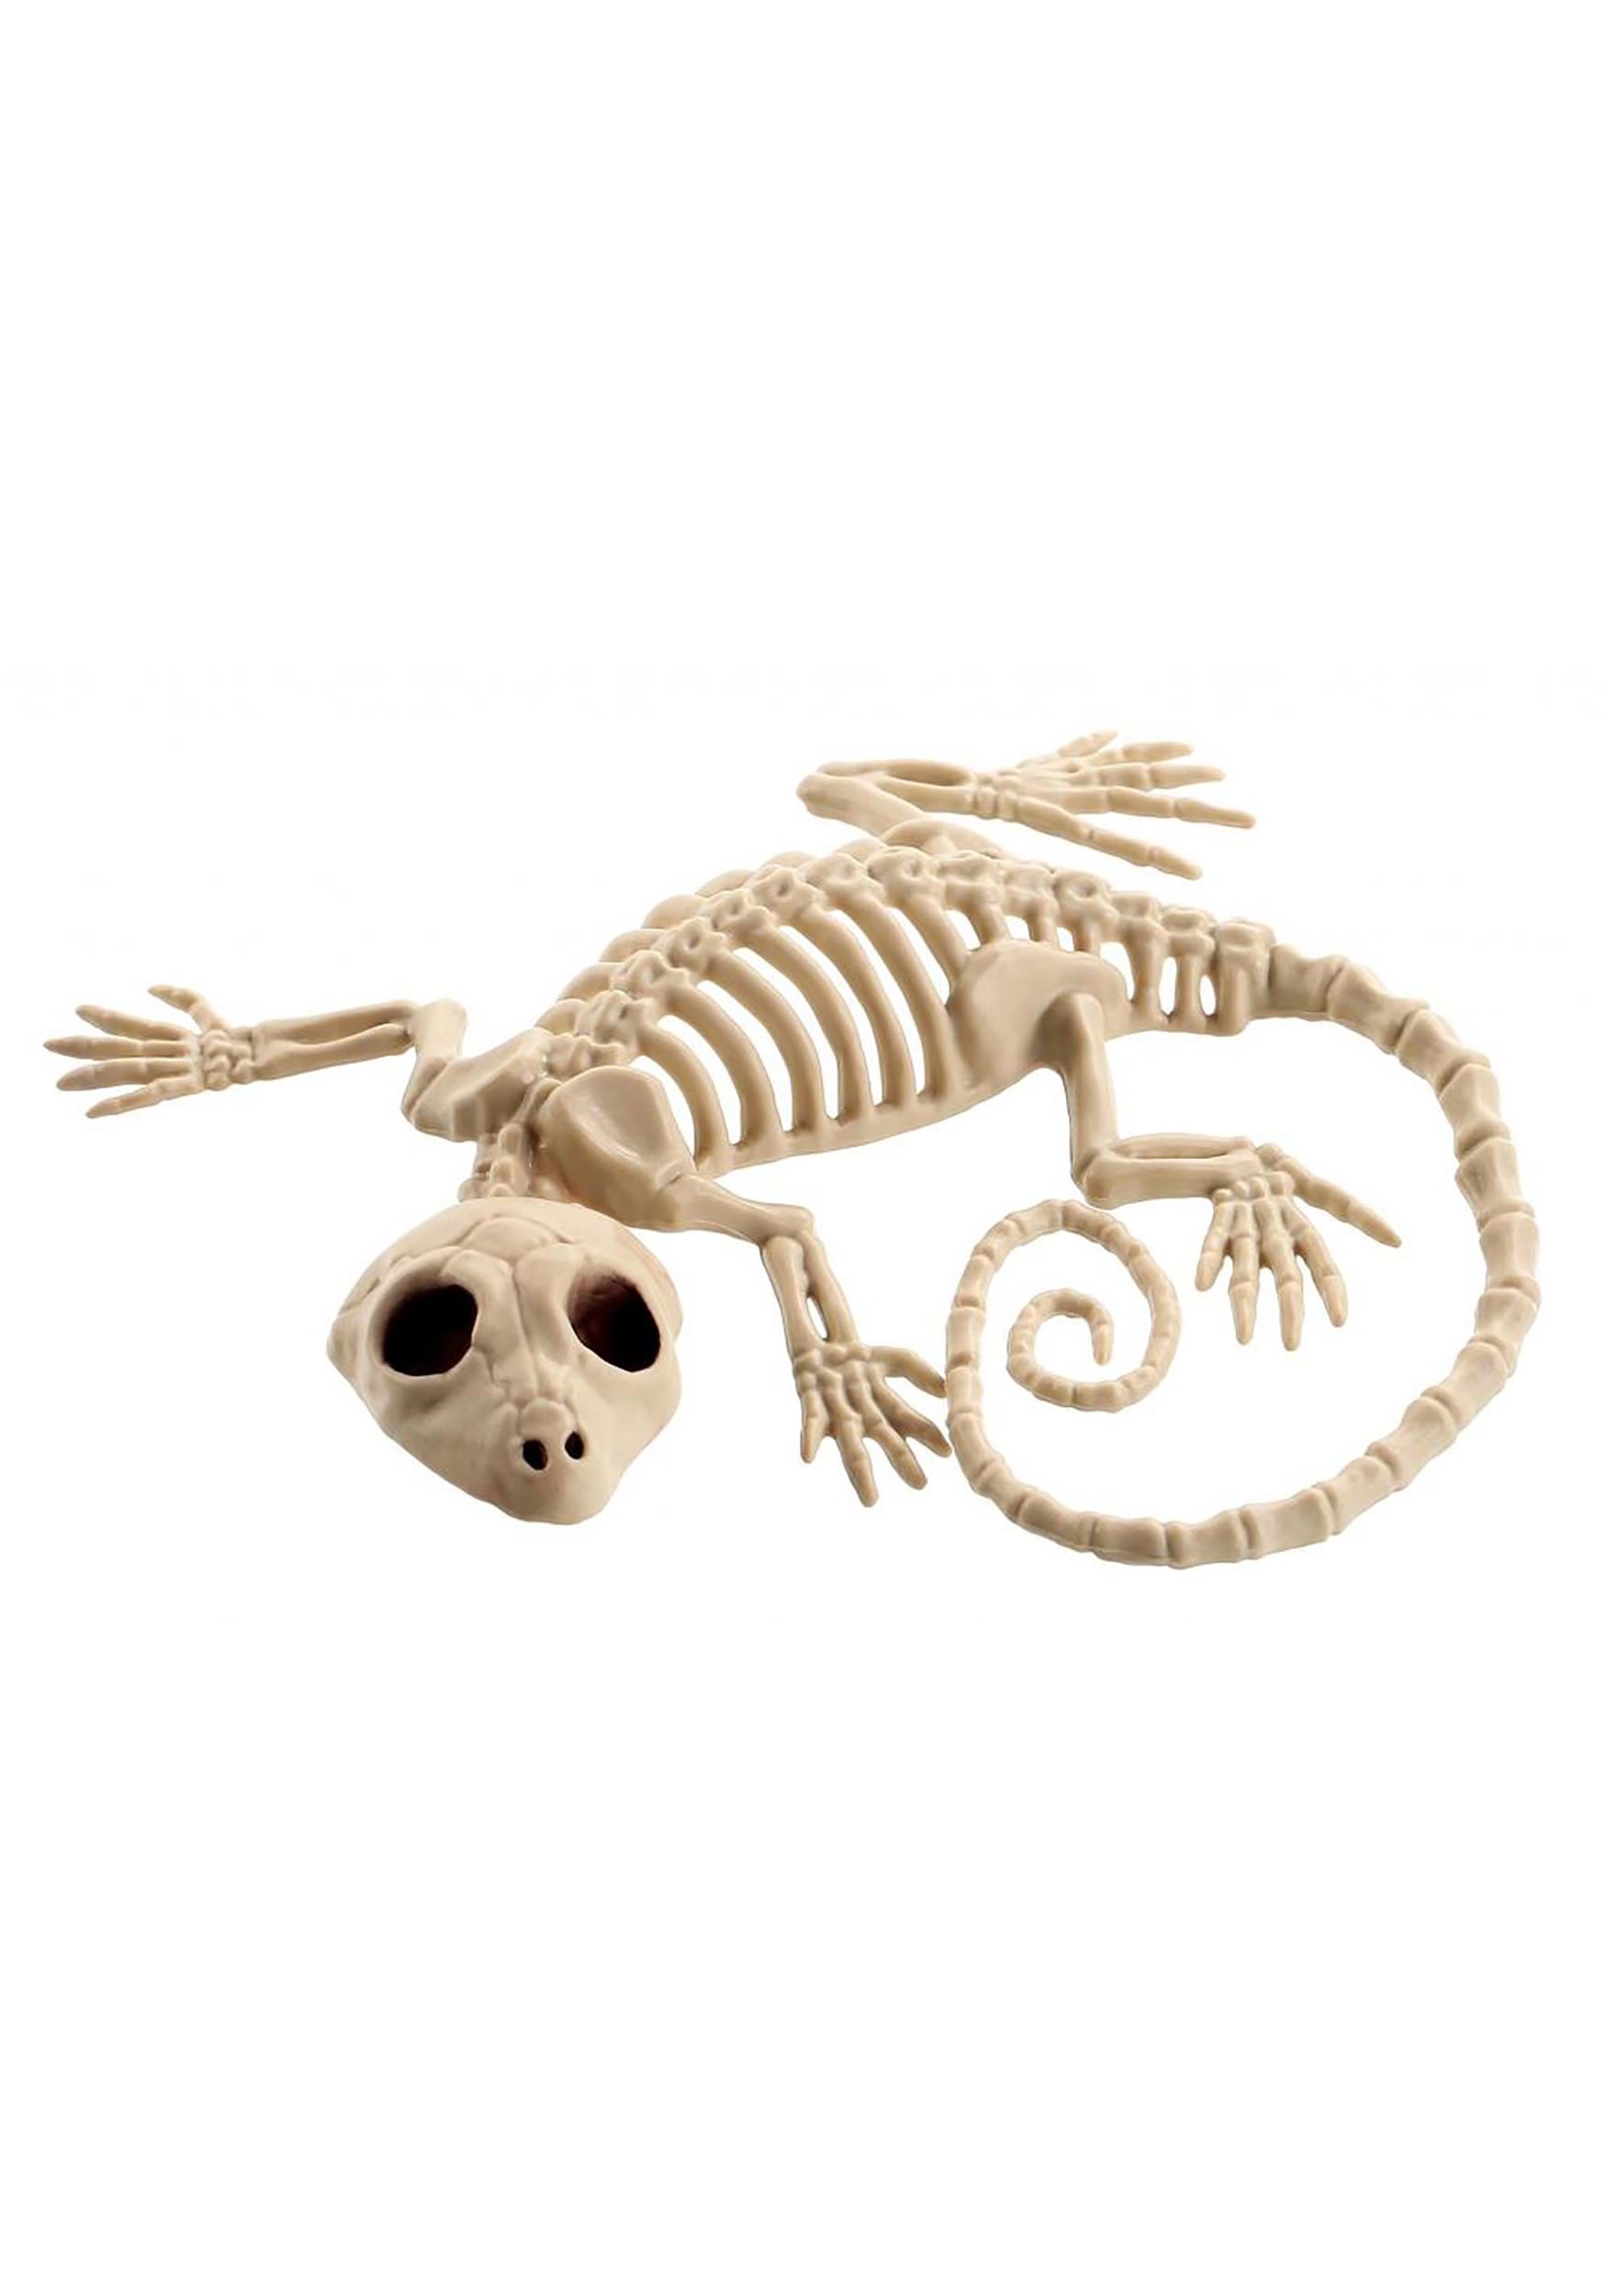 7 Gecko Skeleton Halloween Prop